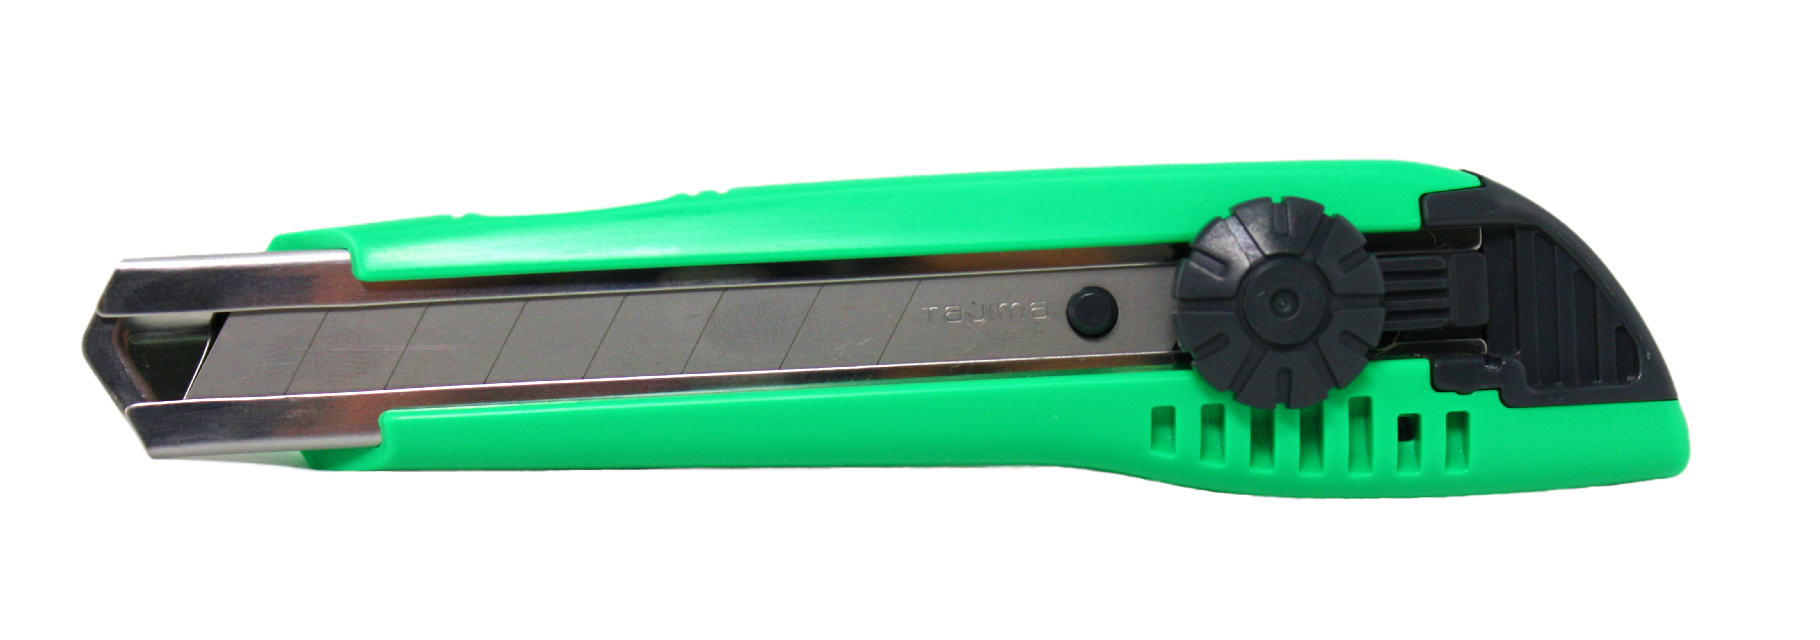 18mm green cutter